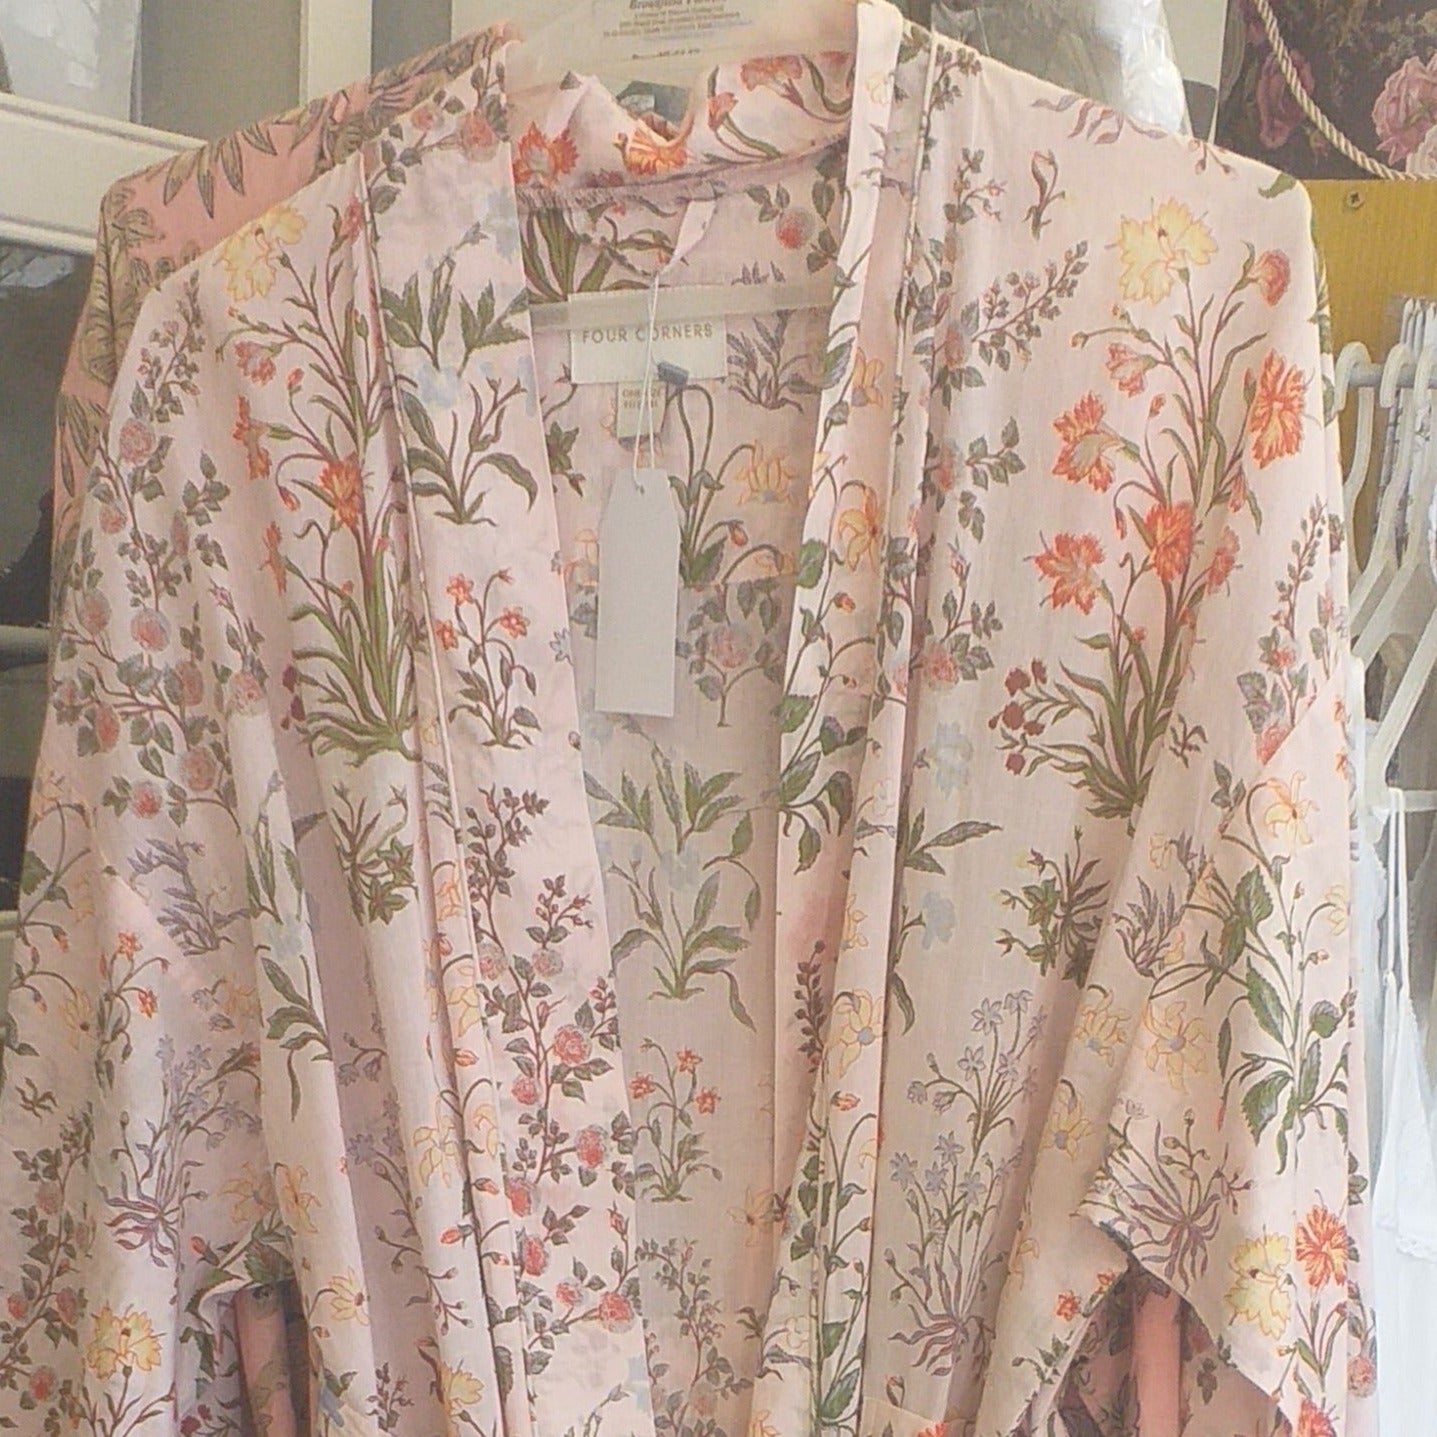 Soft Pink/apricot floral kimono